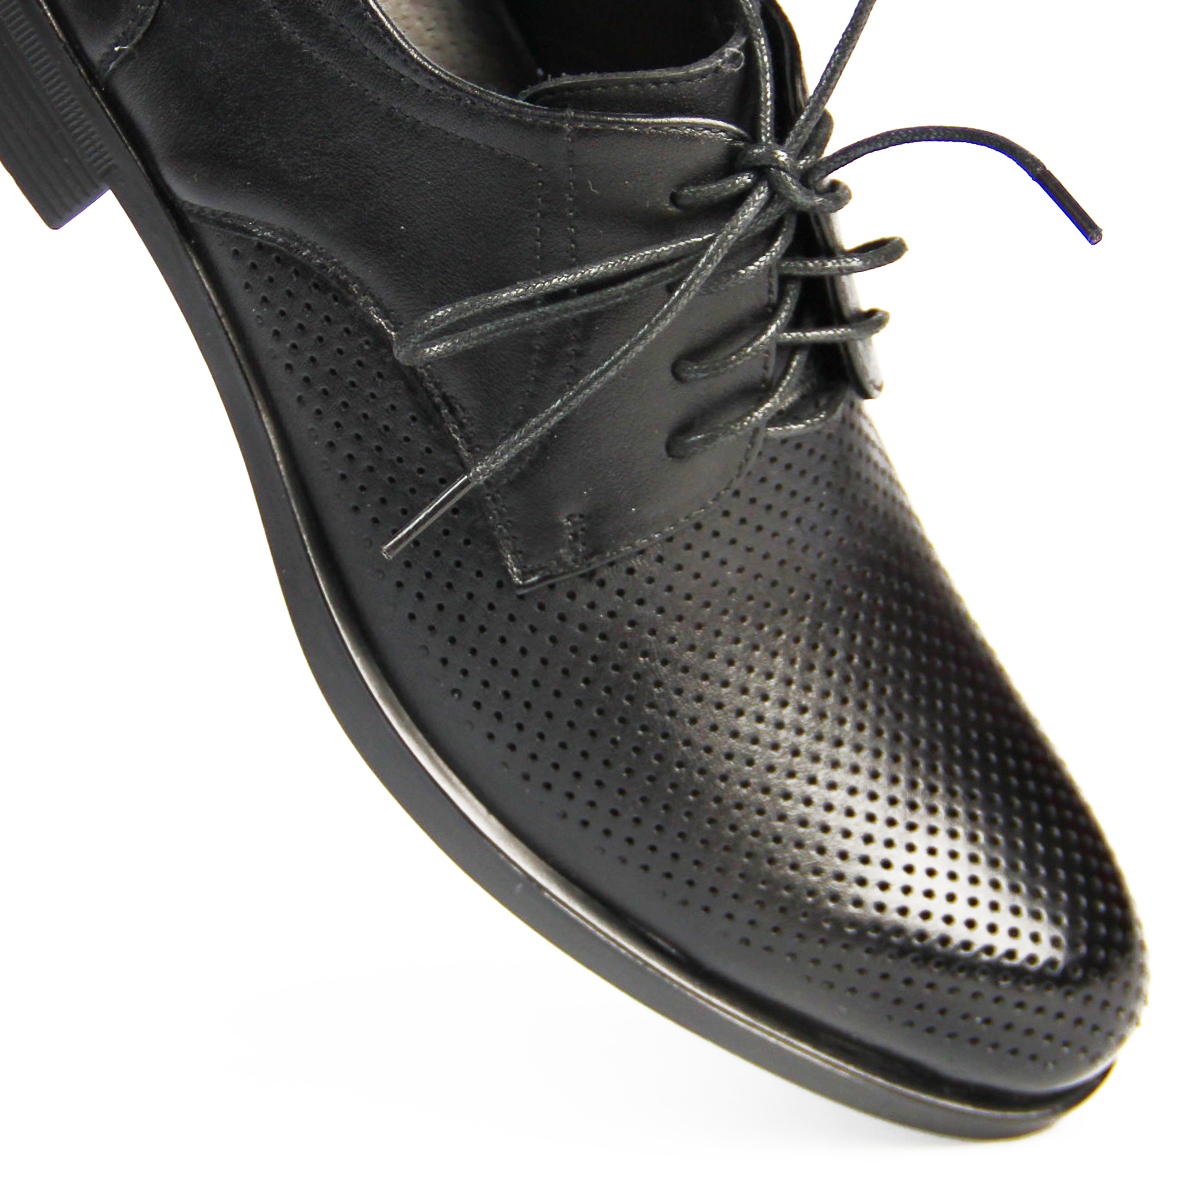 Каталог Полуботинки мужские Фабрика обуви